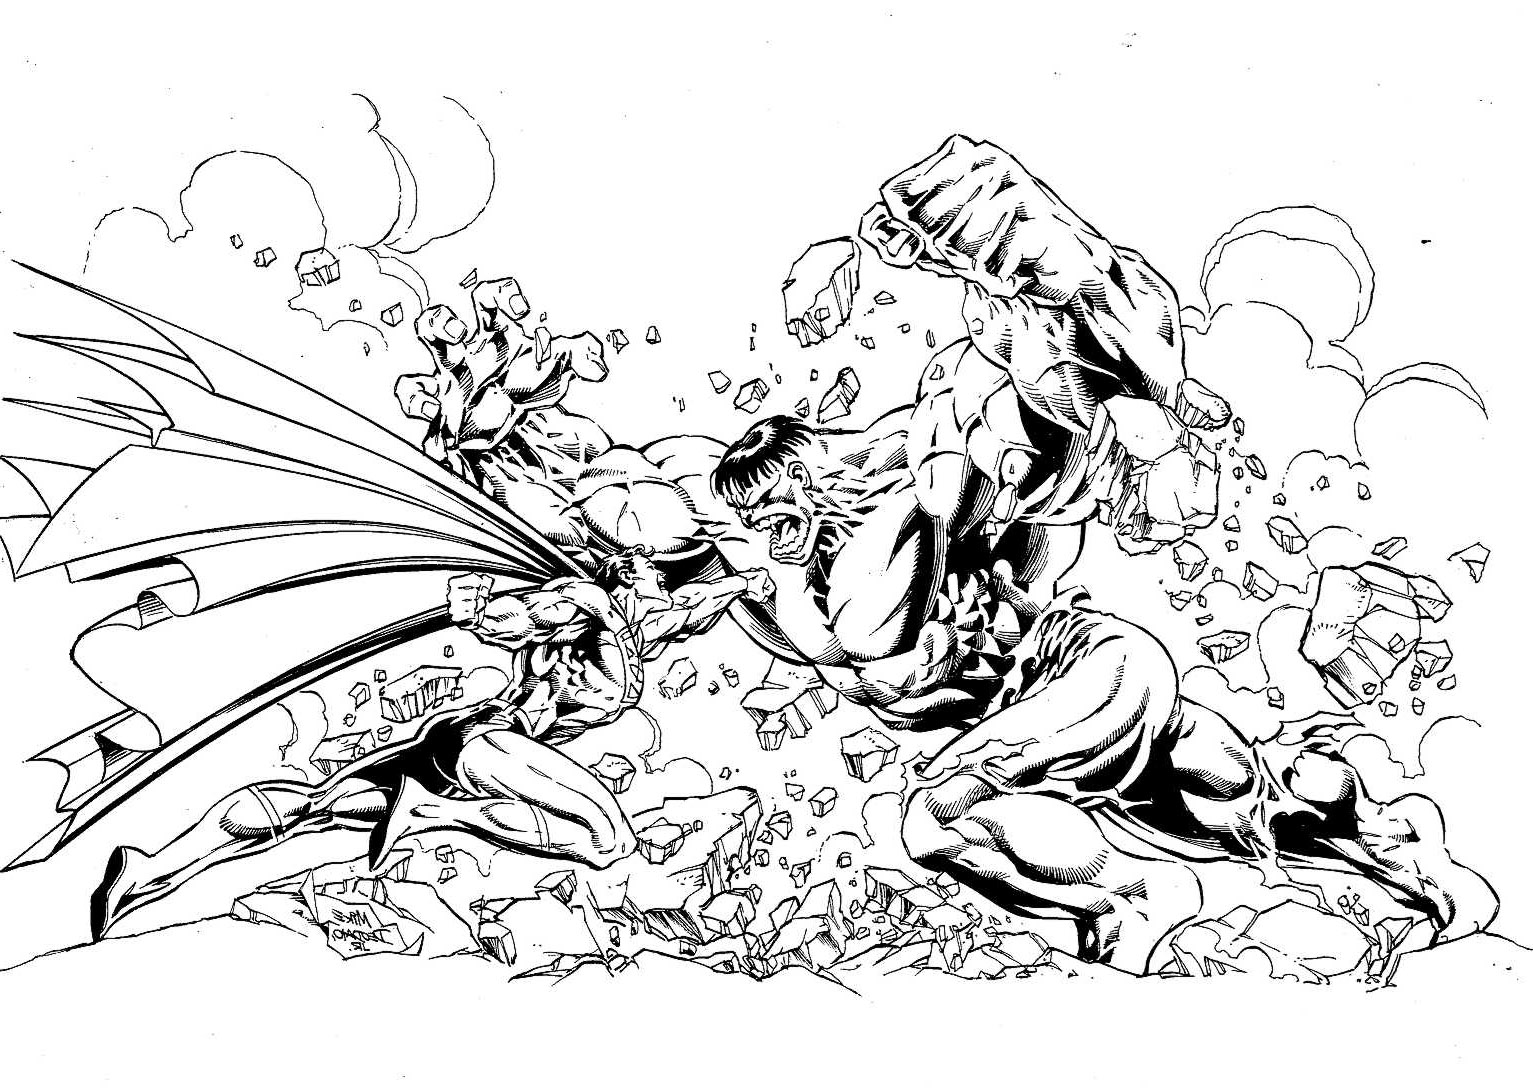 Ein unglaublicher Fight! Wer wird zwischen diesen beiden Superhelden gewinnen? Hulk (von Marvel) oder Superman (von DC Comics) ?